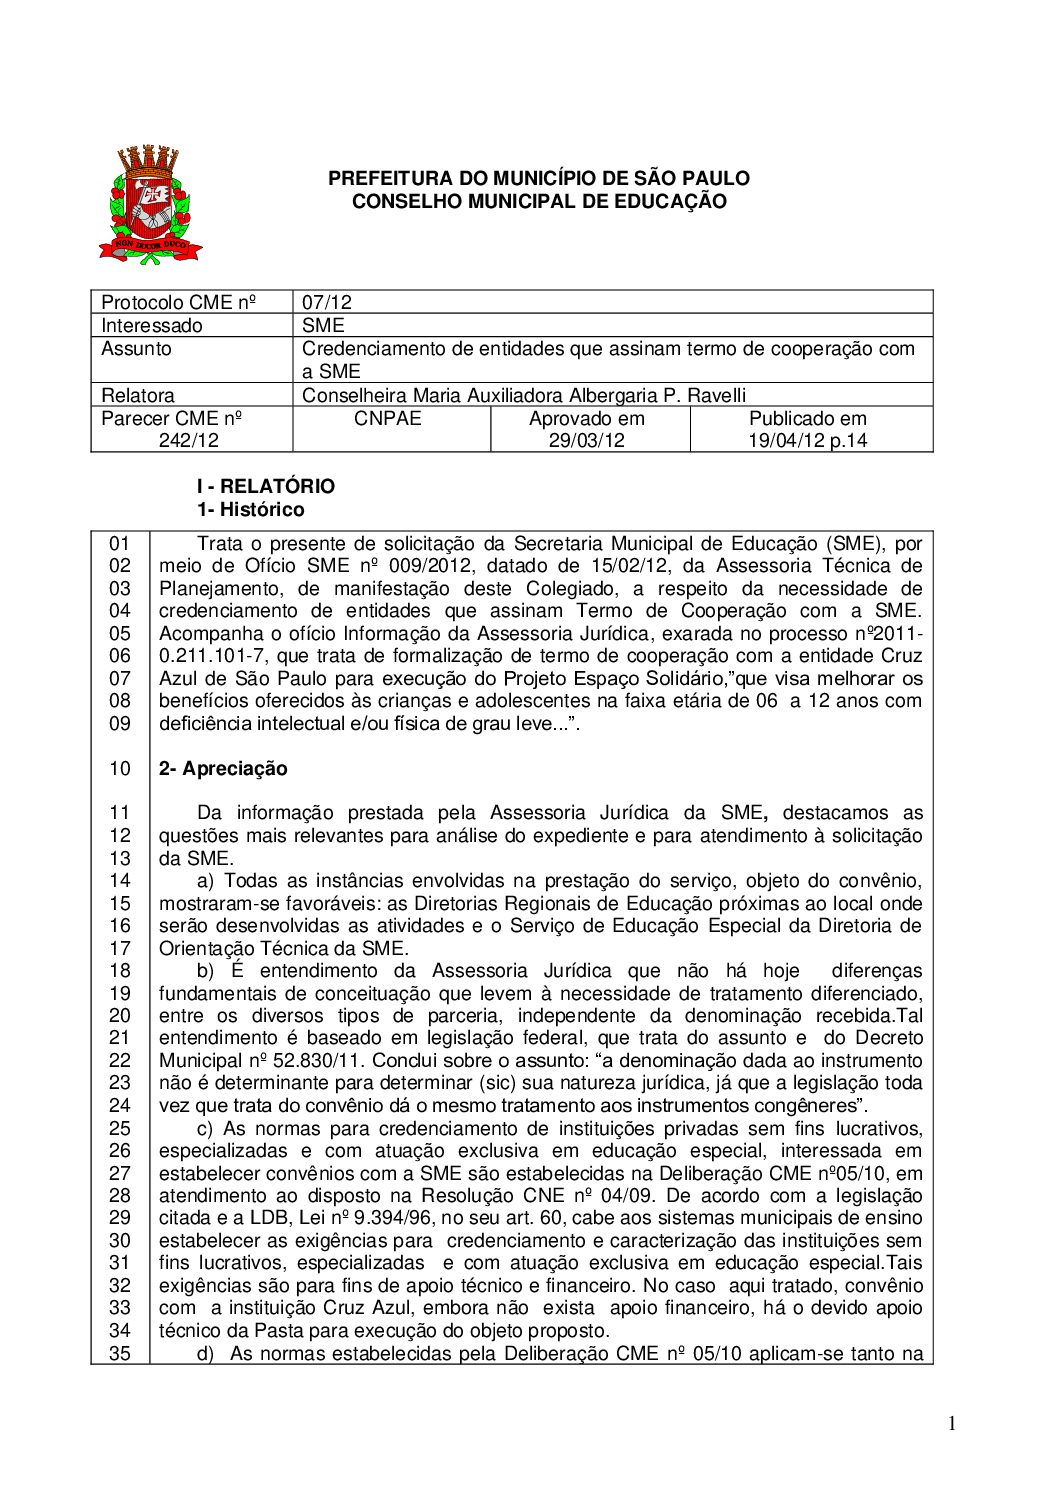 Parecer CME nº 242/2012 - Credenciamento de entidades que assinam termo de cooperação com a SME 